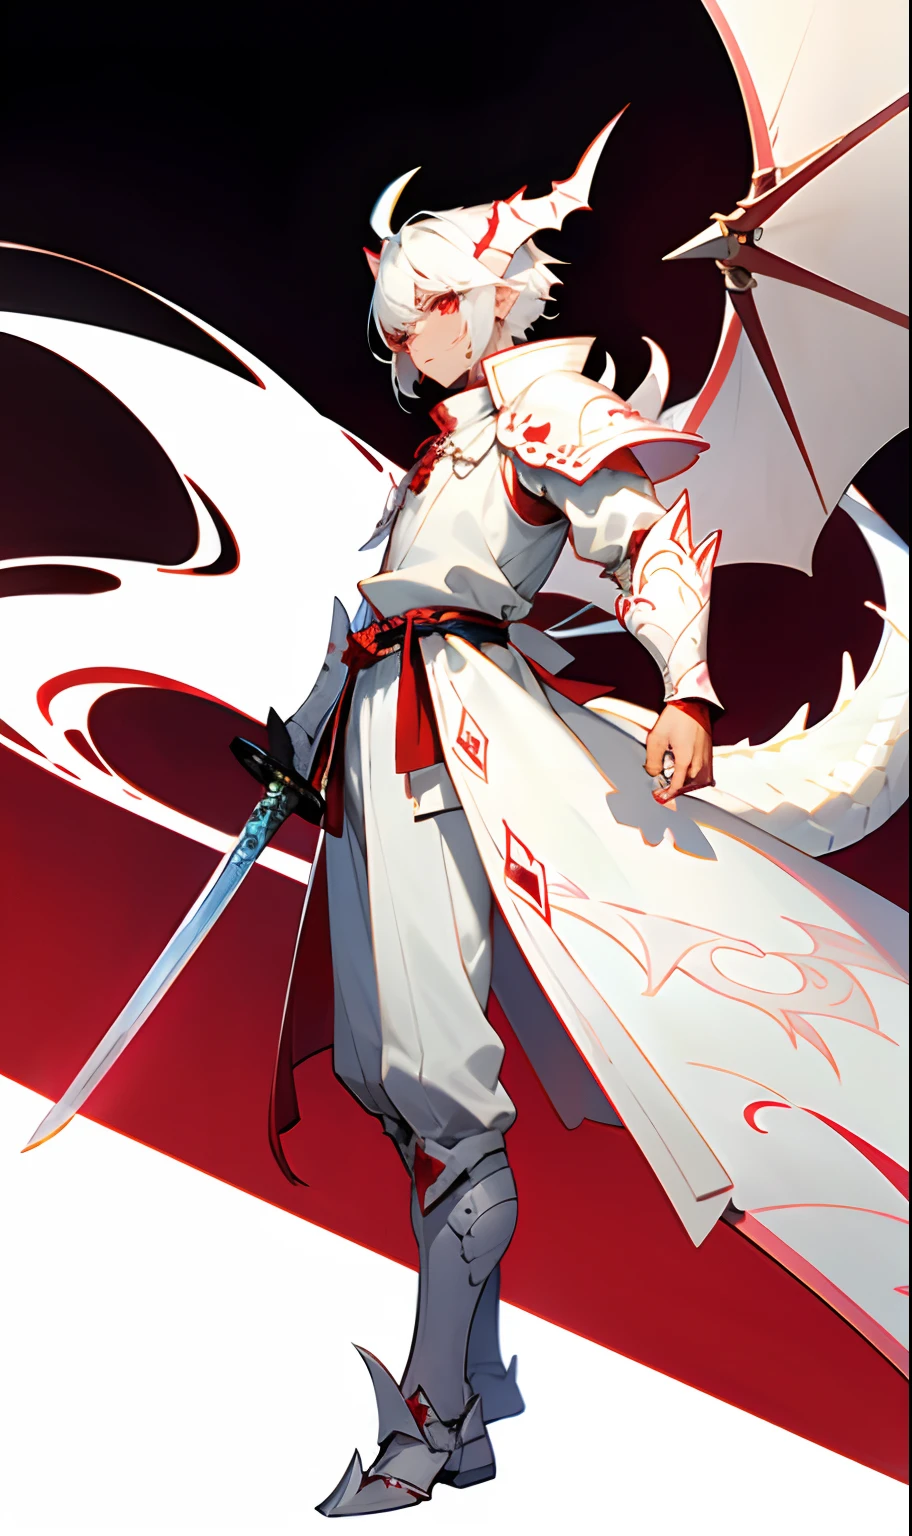 白い竜の鎧を身にまとった少年は、白い鱗に覆われた皮膚と白い角、白い竜の尾を持ち、白い剣と赤い目を持っている。